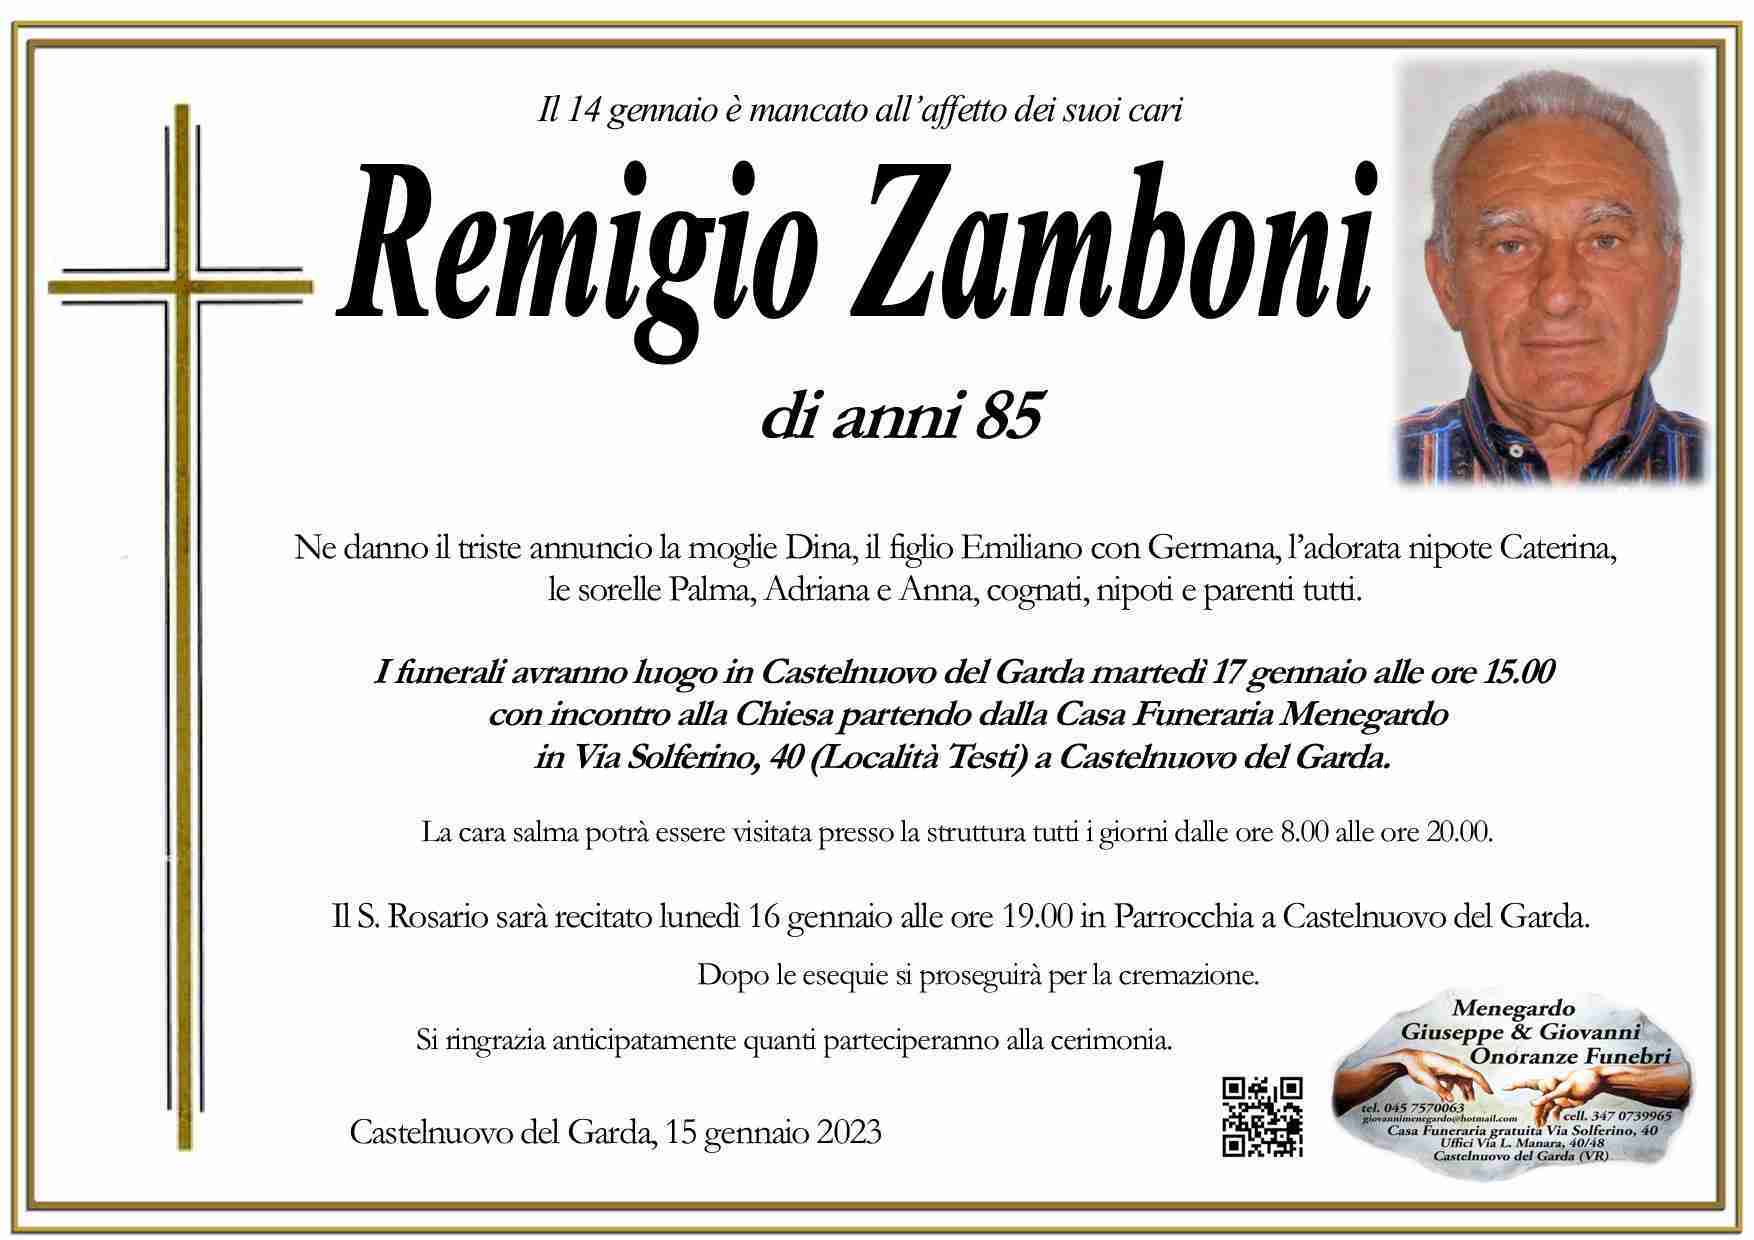 Remigio Zamboni